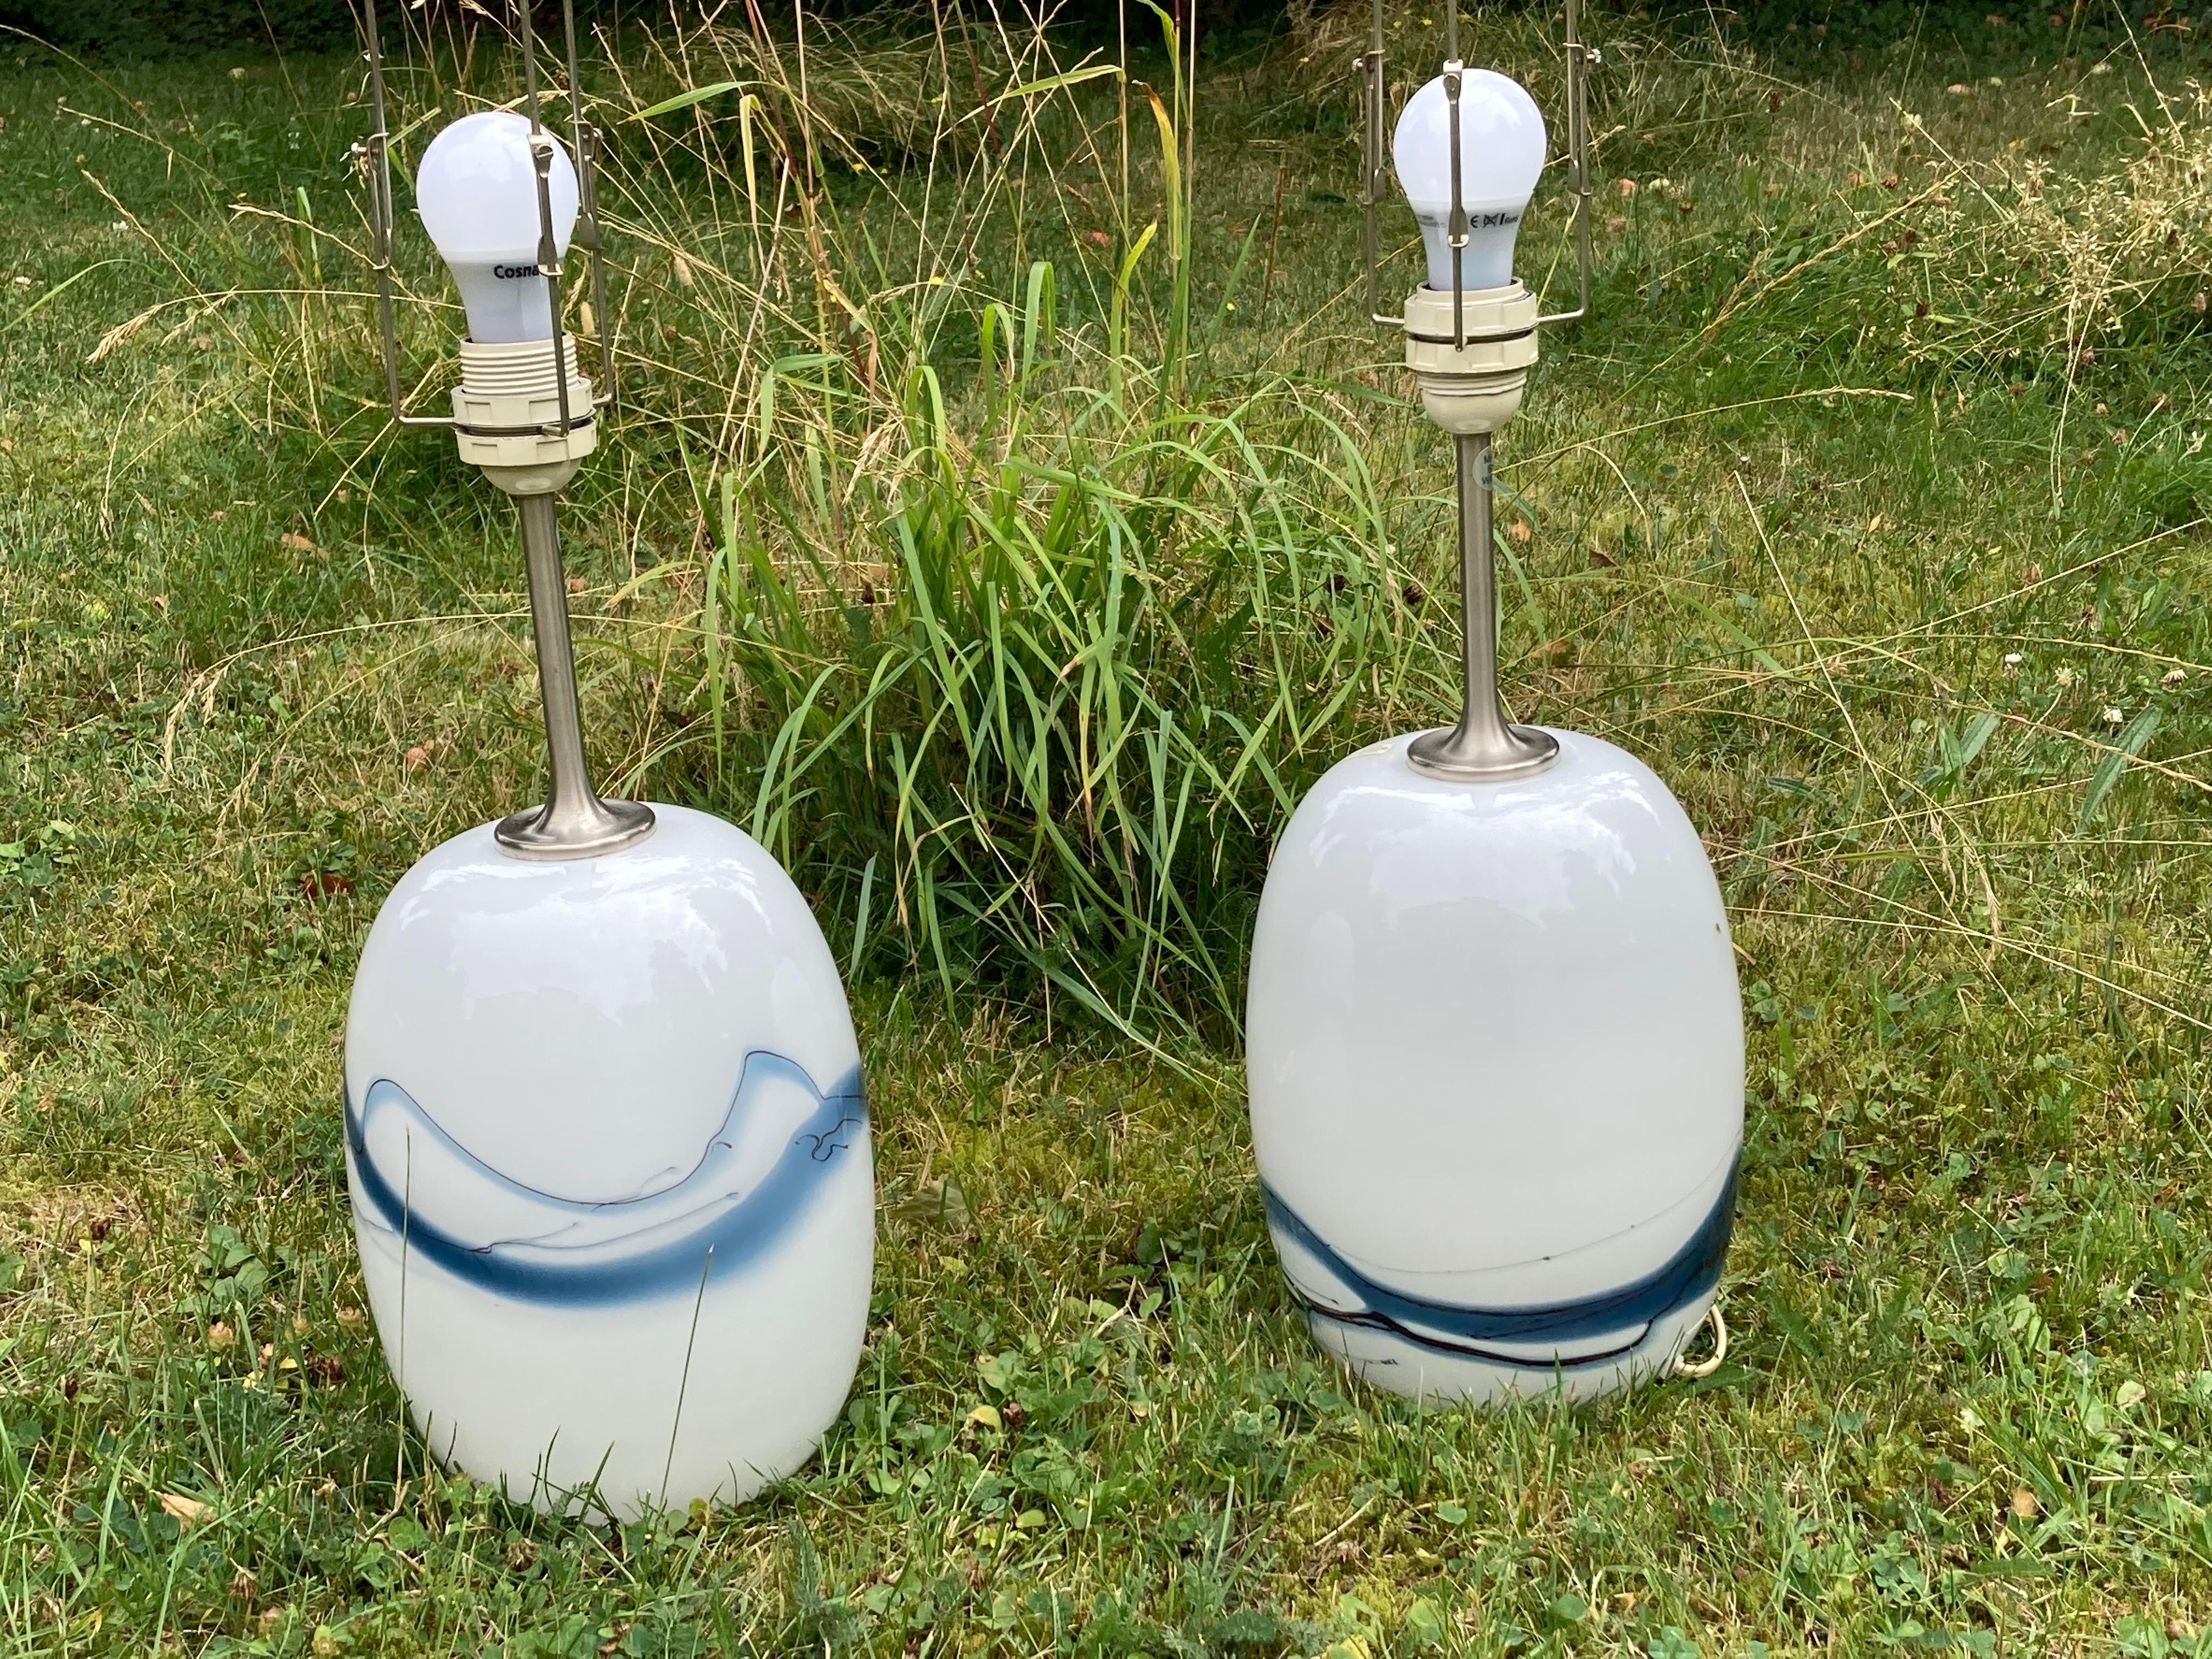 Zwei Holmegaard-Lampen mit gebürsteten Stahlbeschlägen von Holmegaard, Dänemark, 1984, in Weiß mit einer Vielzahl von blauen Glasschmelzen unter dem glatten Klarglas, entworfen von Michael Bang, 1984.
Die Höhe von 14